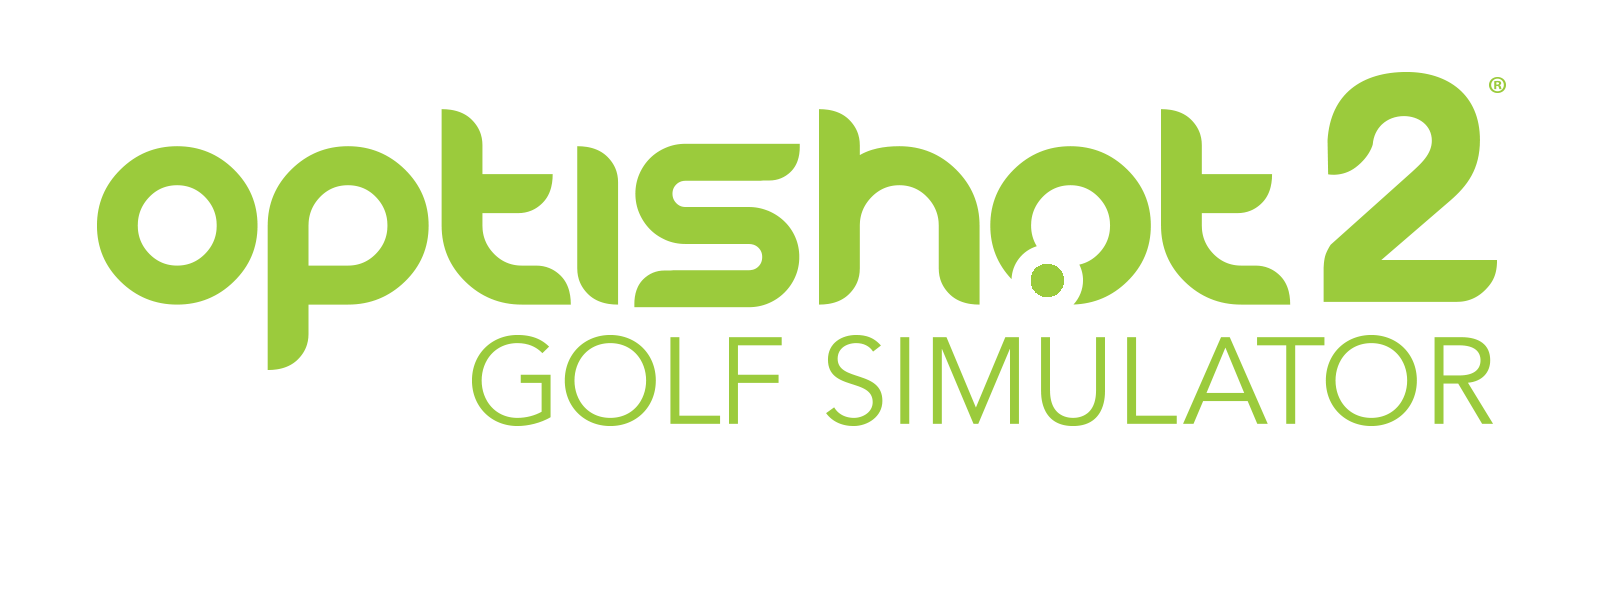 Domácí golfový simulátor OptiShot2, verze 2017